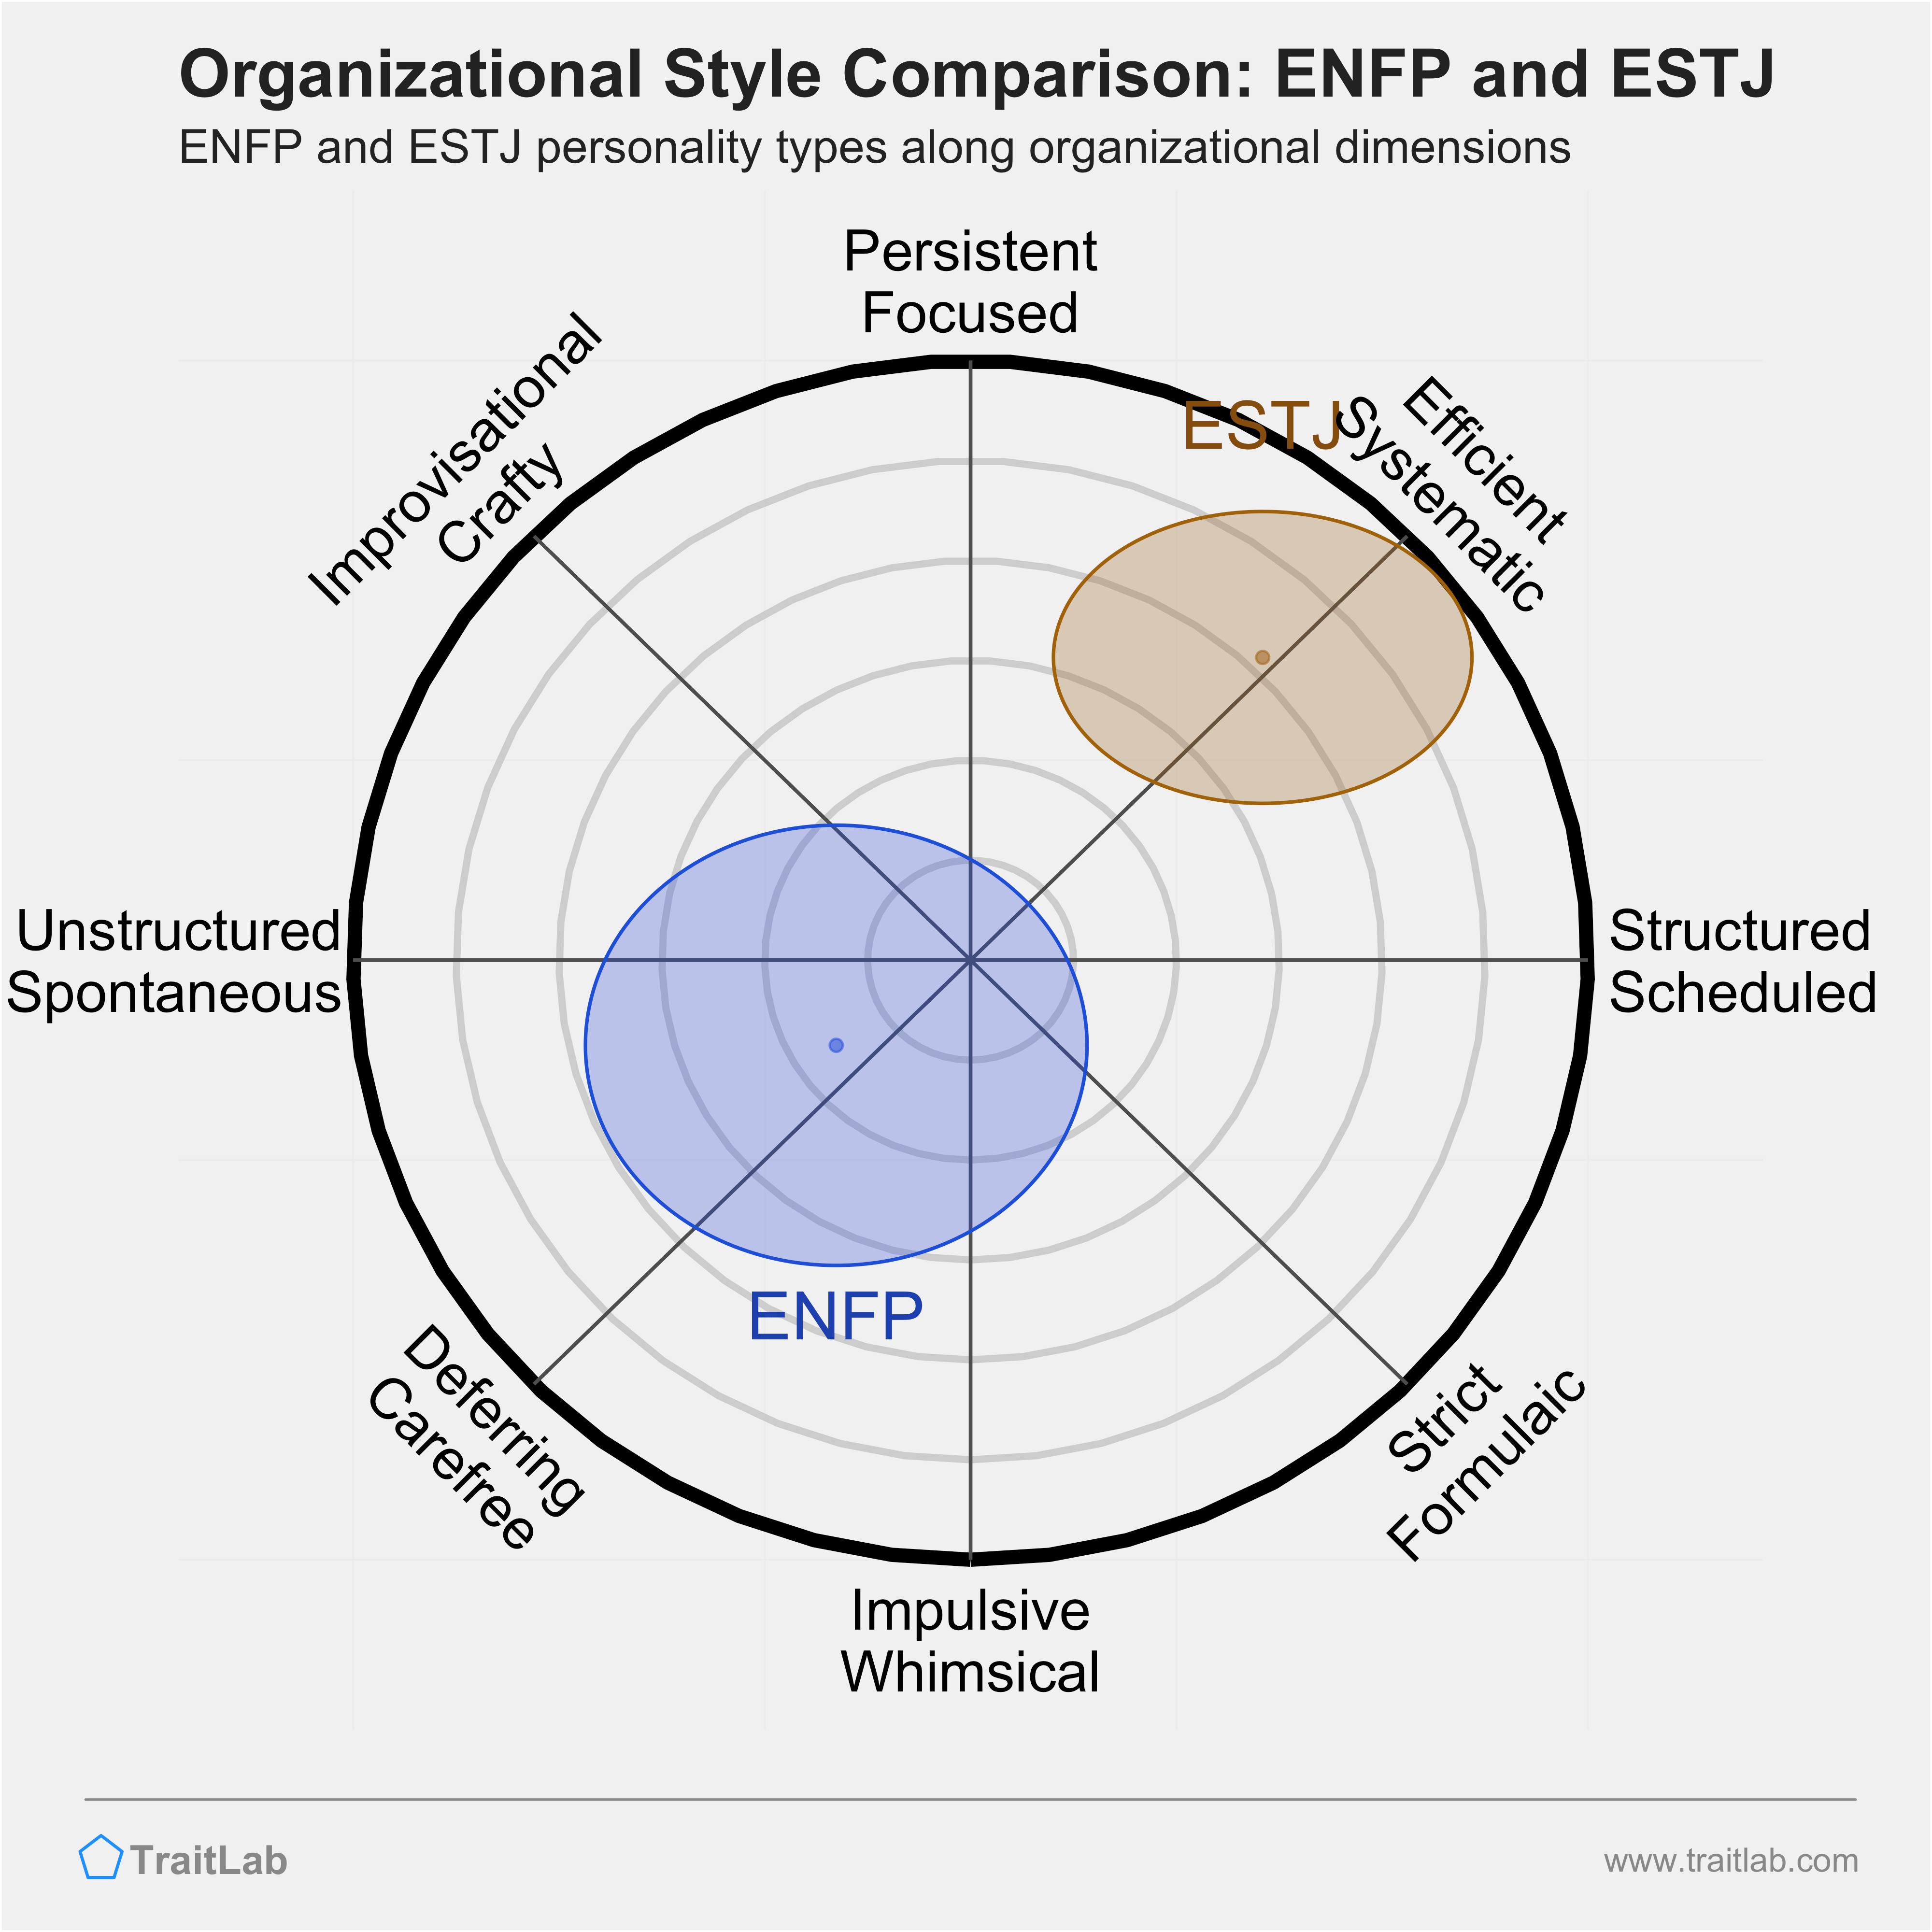 ENFP and ESTJ comparison across organizational dimensions